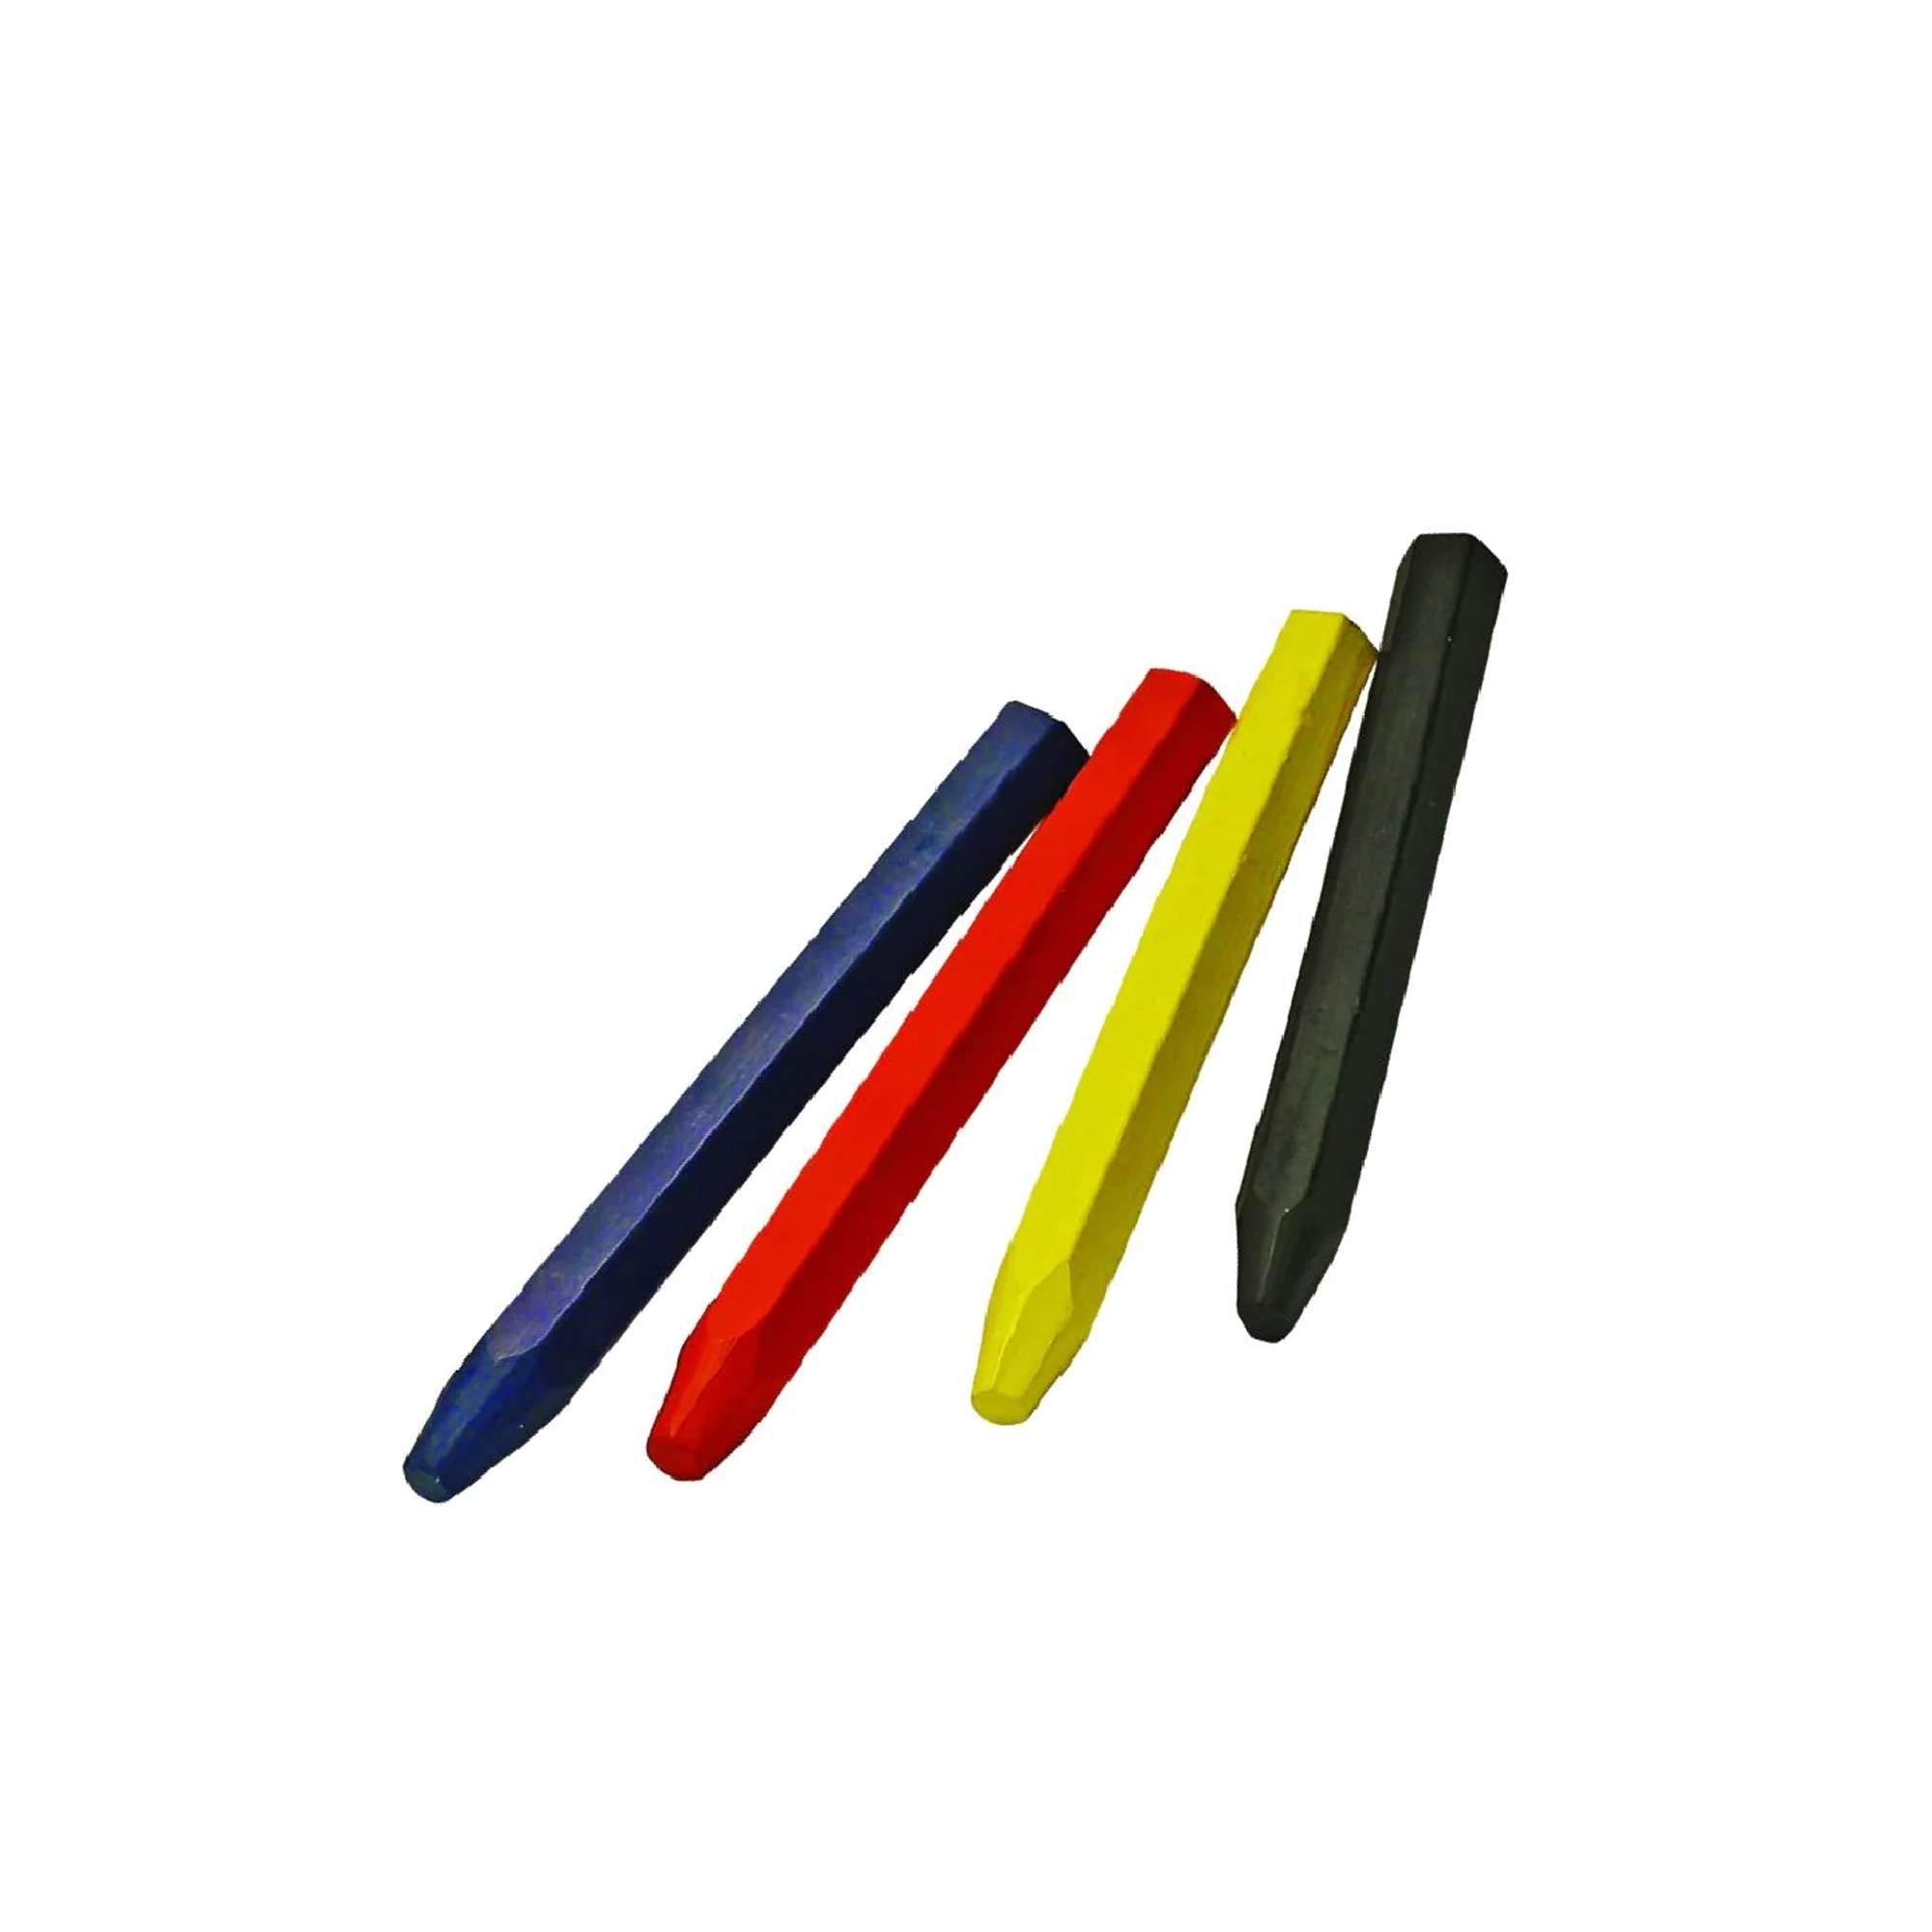 Pastelli industriali esagonali rossi, blu, gialli conf. 12pz - Metrica